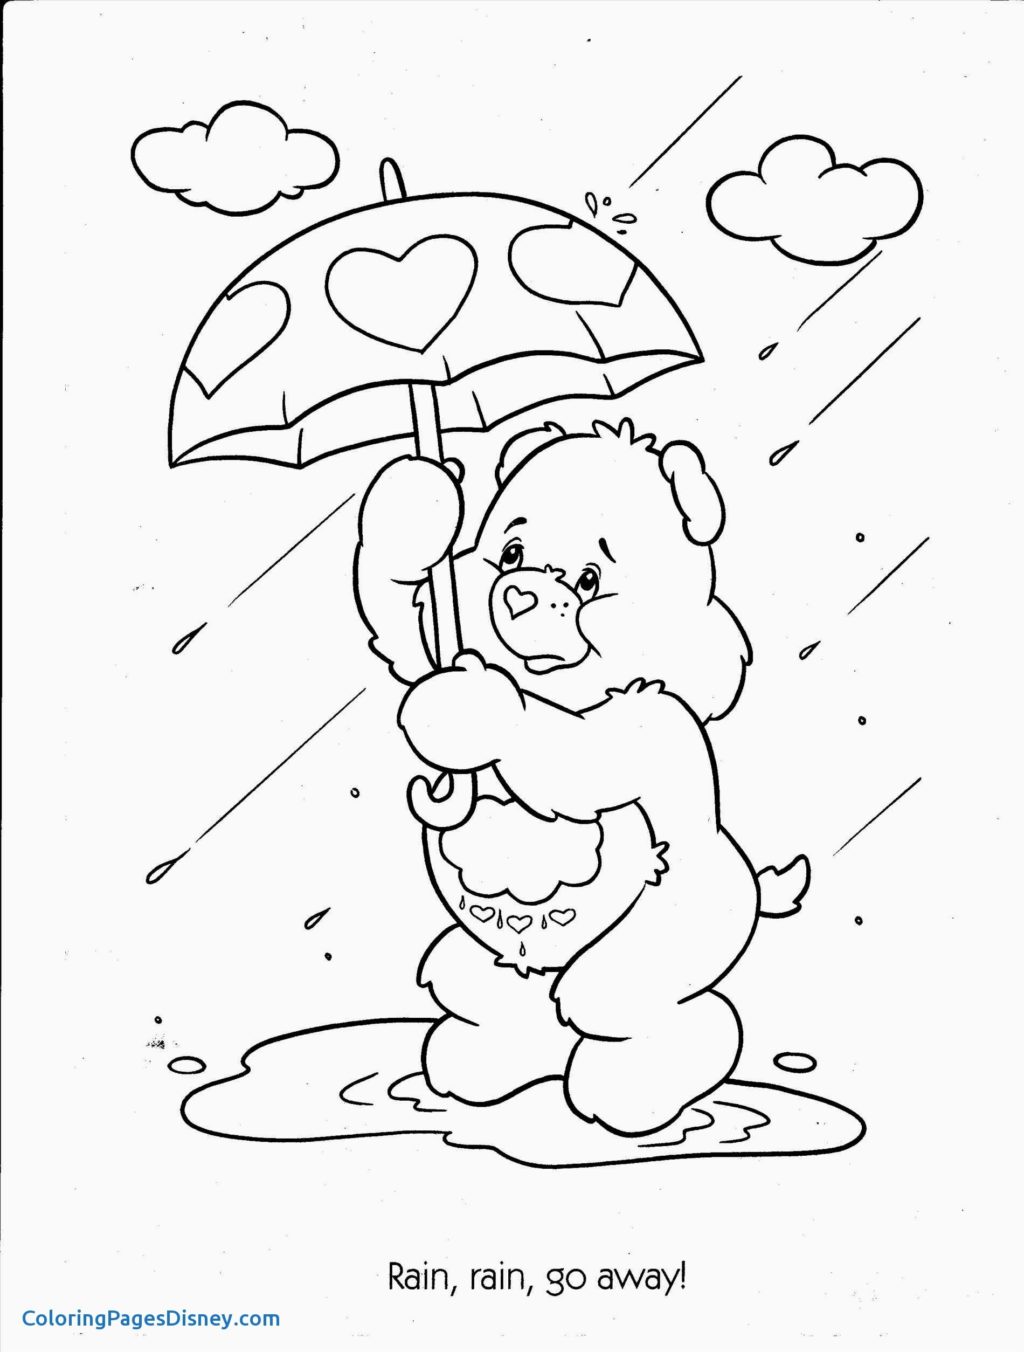 Worksheet Worksheet Coloring For Kids Preschool Rainy